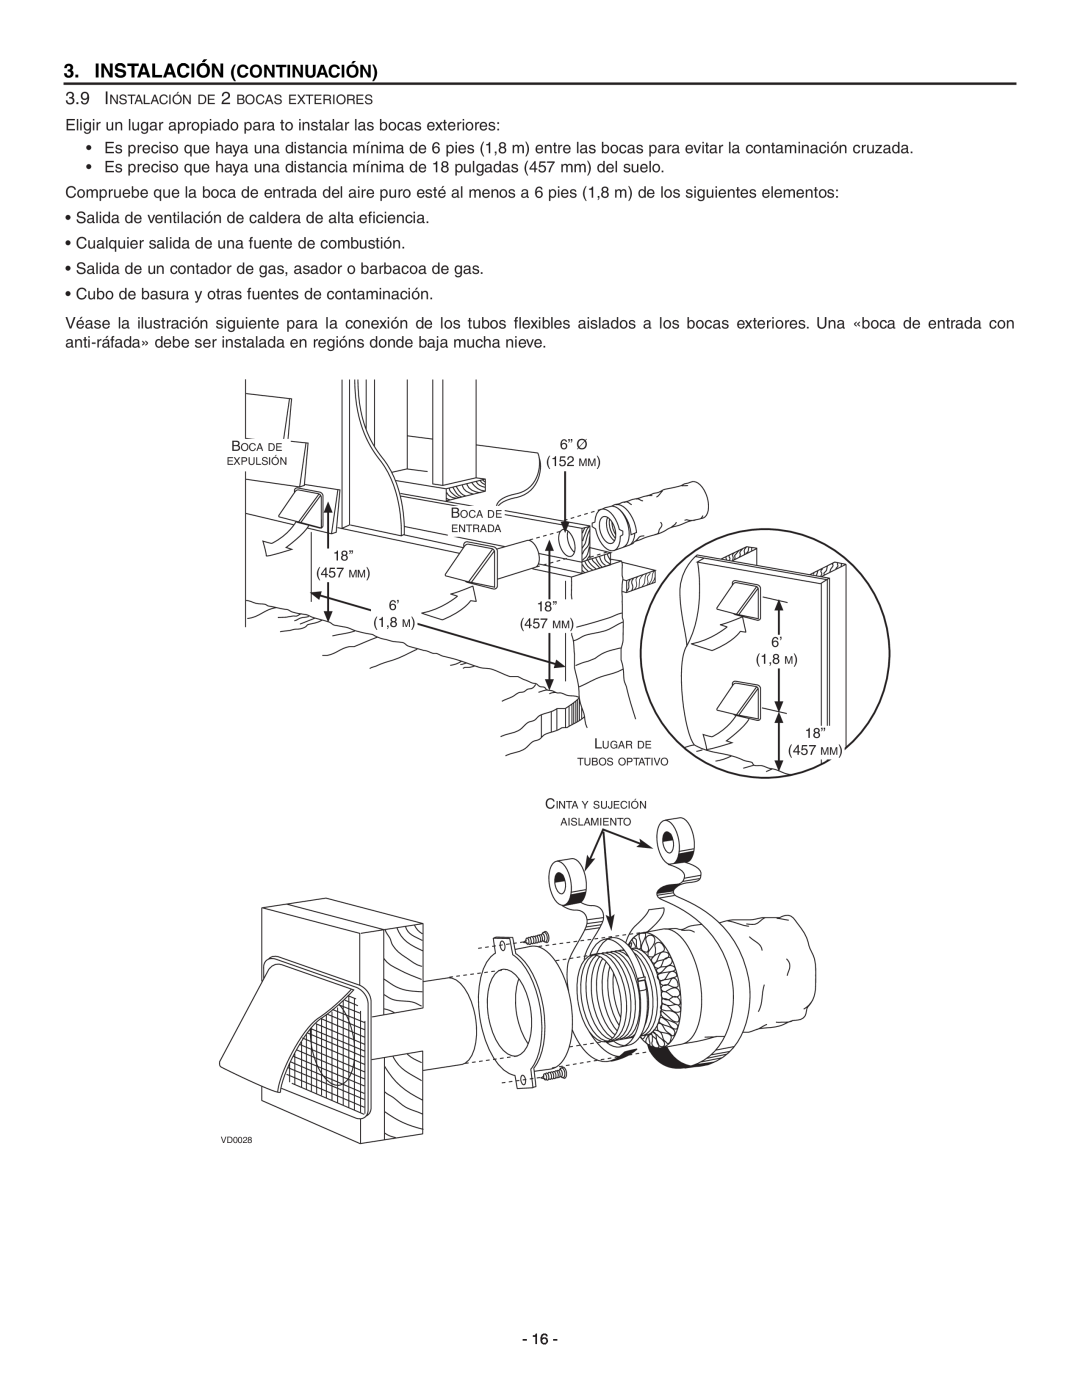 Broan ERV90HCT installation instructions Instalación Continuación, Cualquier salida de una fuente de combustión 